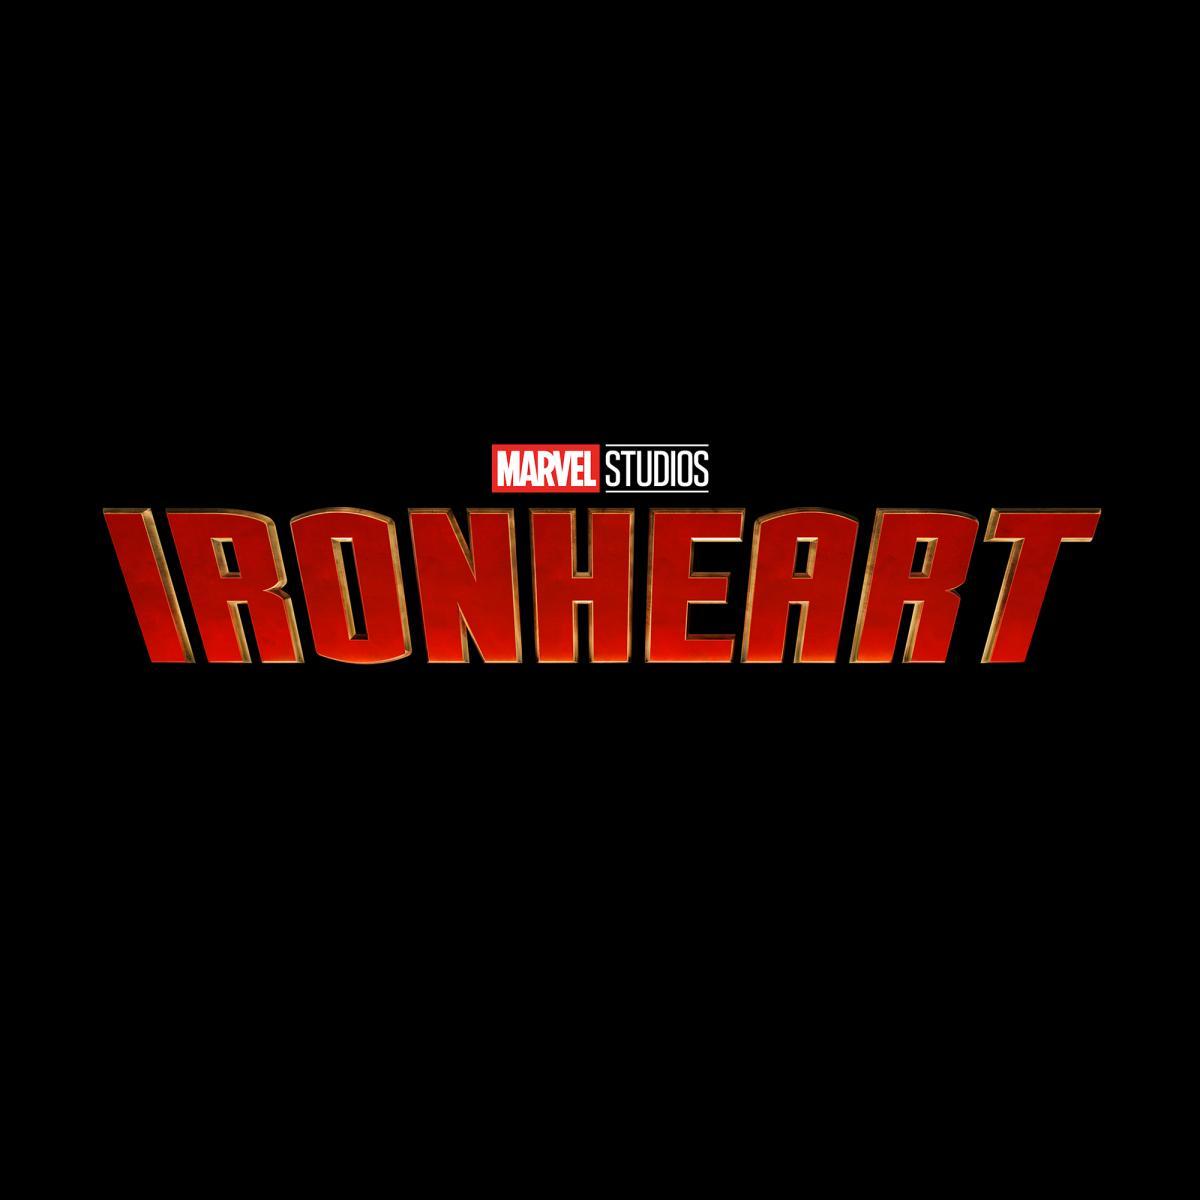 Dominique Thorne es la genial inventora Riri Williams en "Ironheart". (Marvel)